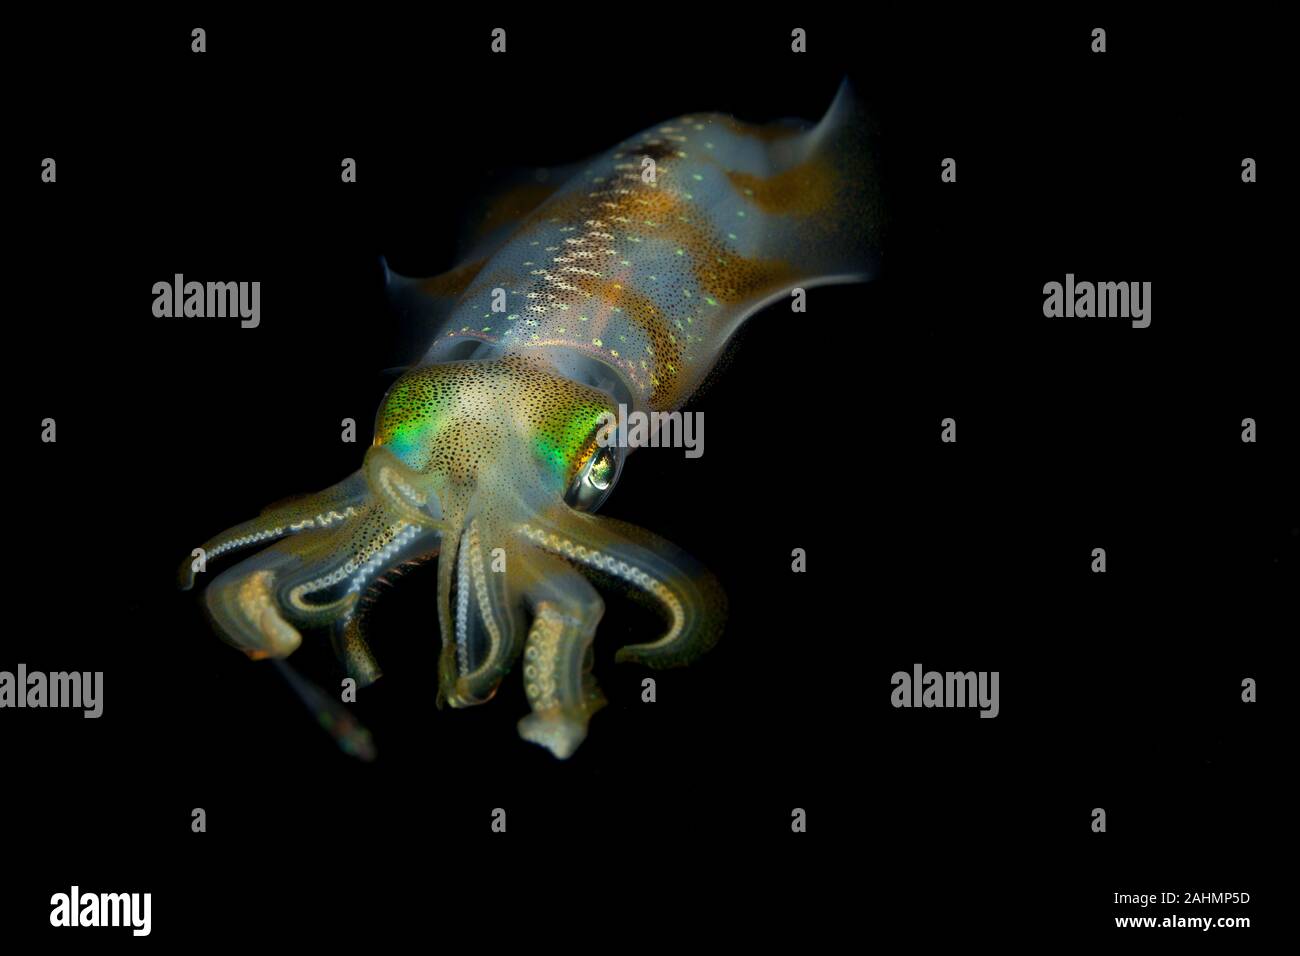 Bigfin reef squid, Sepioteuthis lessoniana Stock Photo